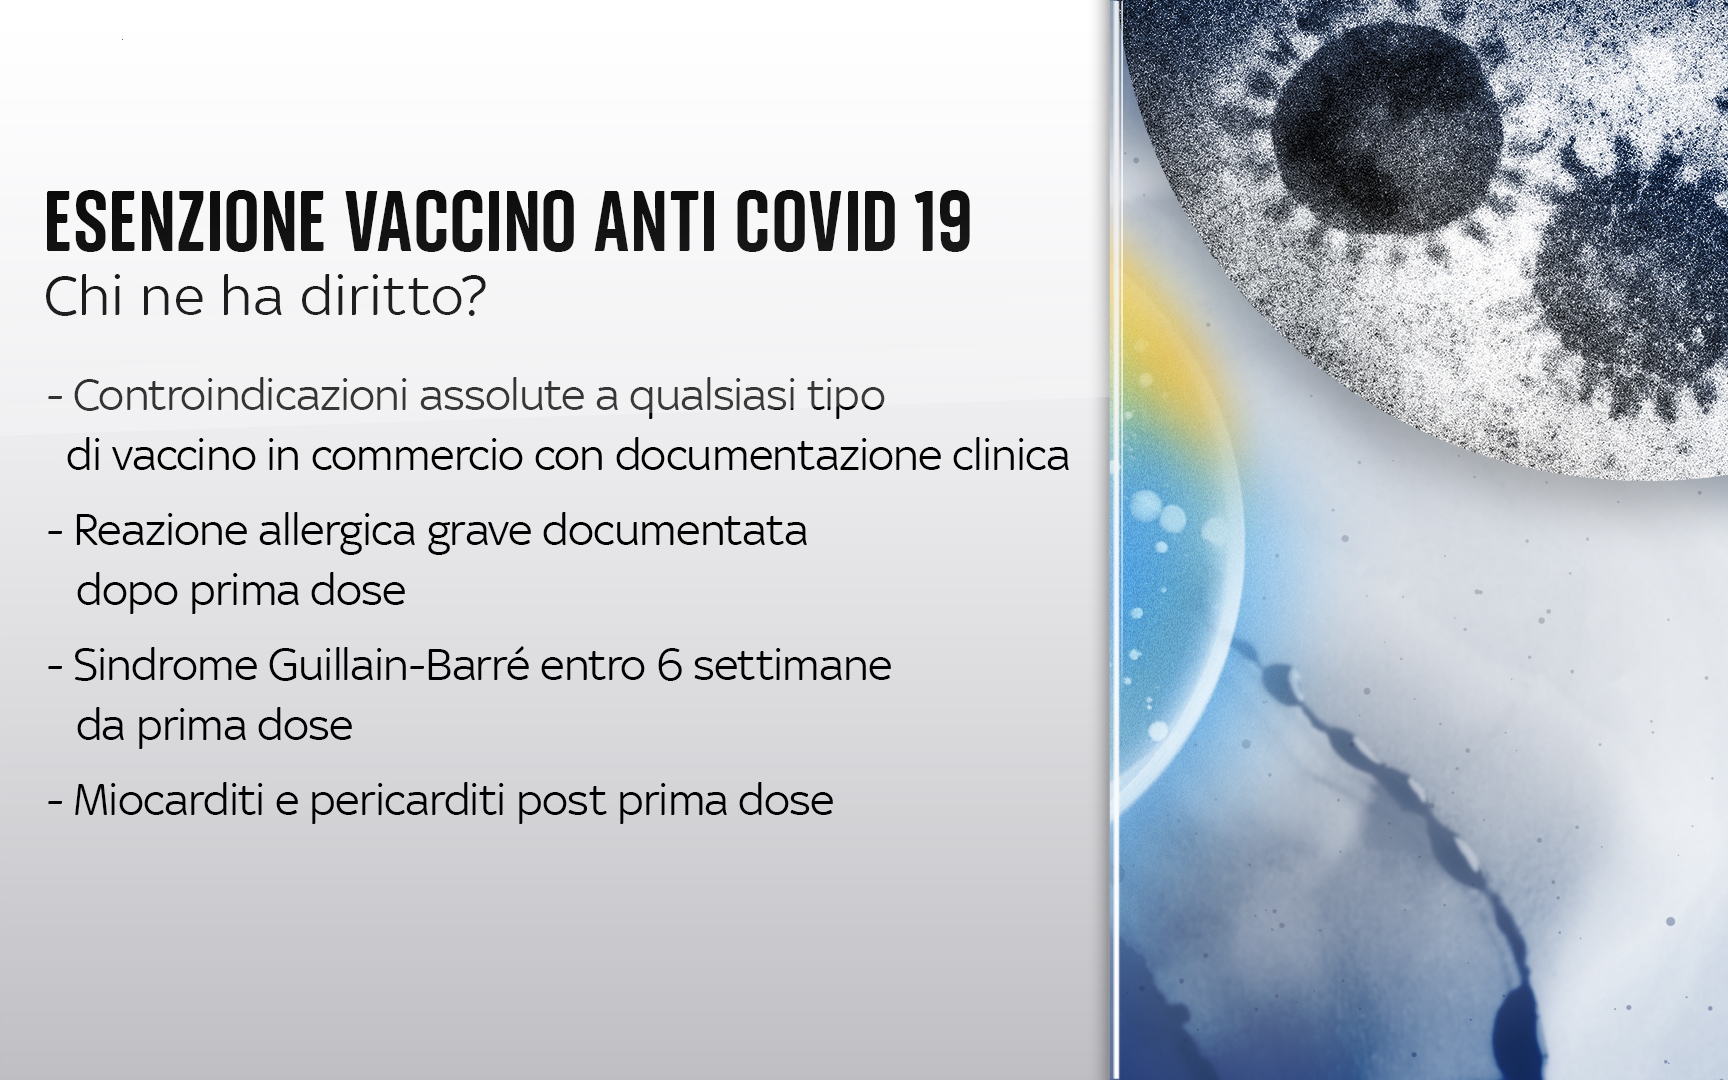 Esenzione vaccino (tratta dal sito tg24.sky.it)